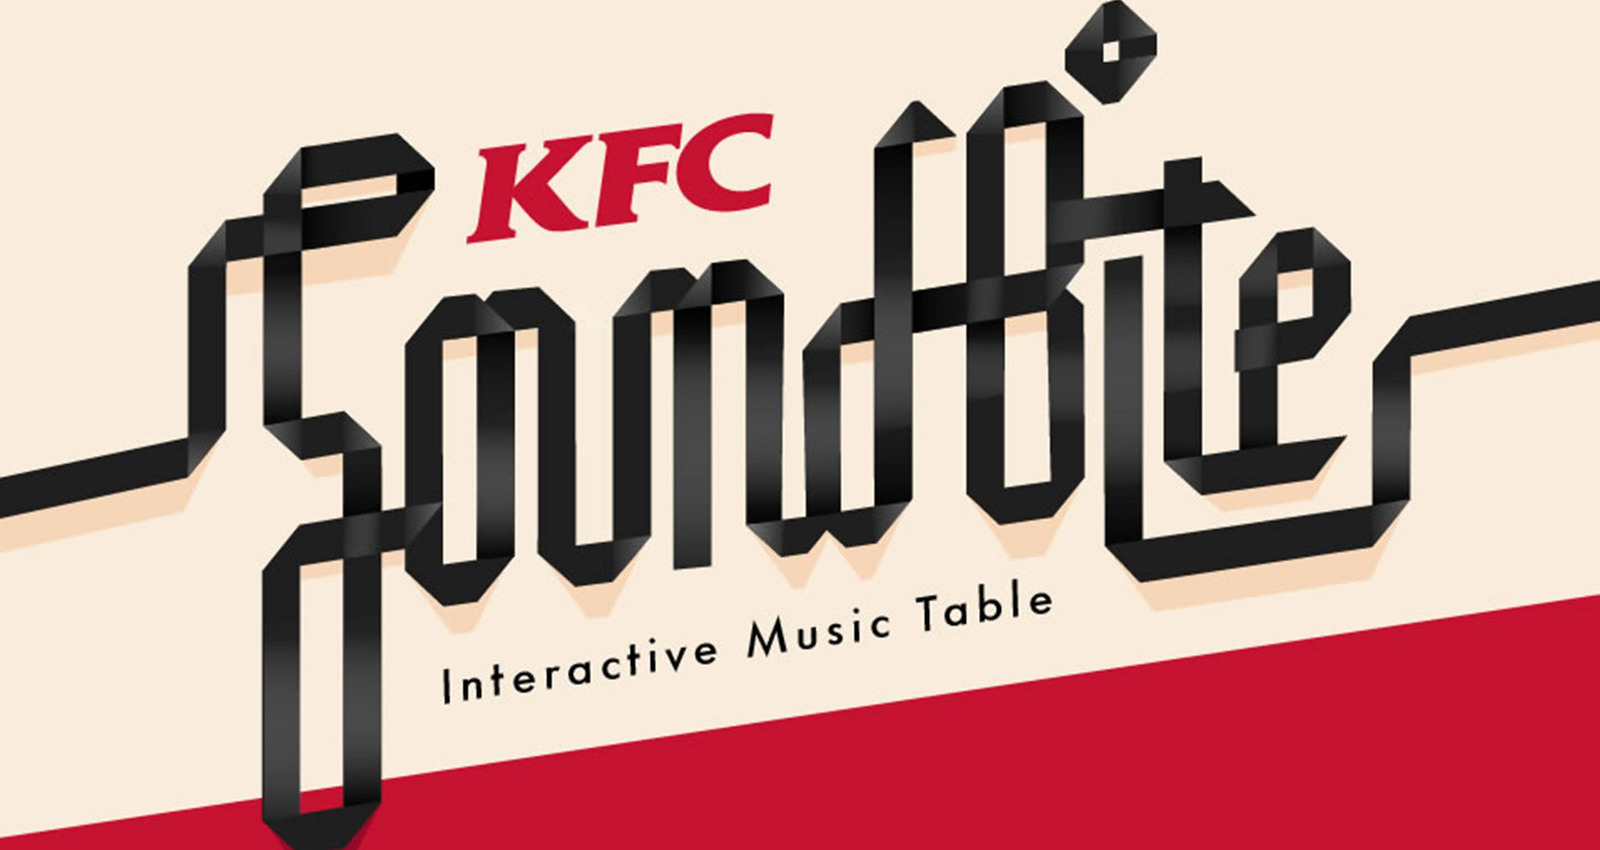 KFC Soundbite